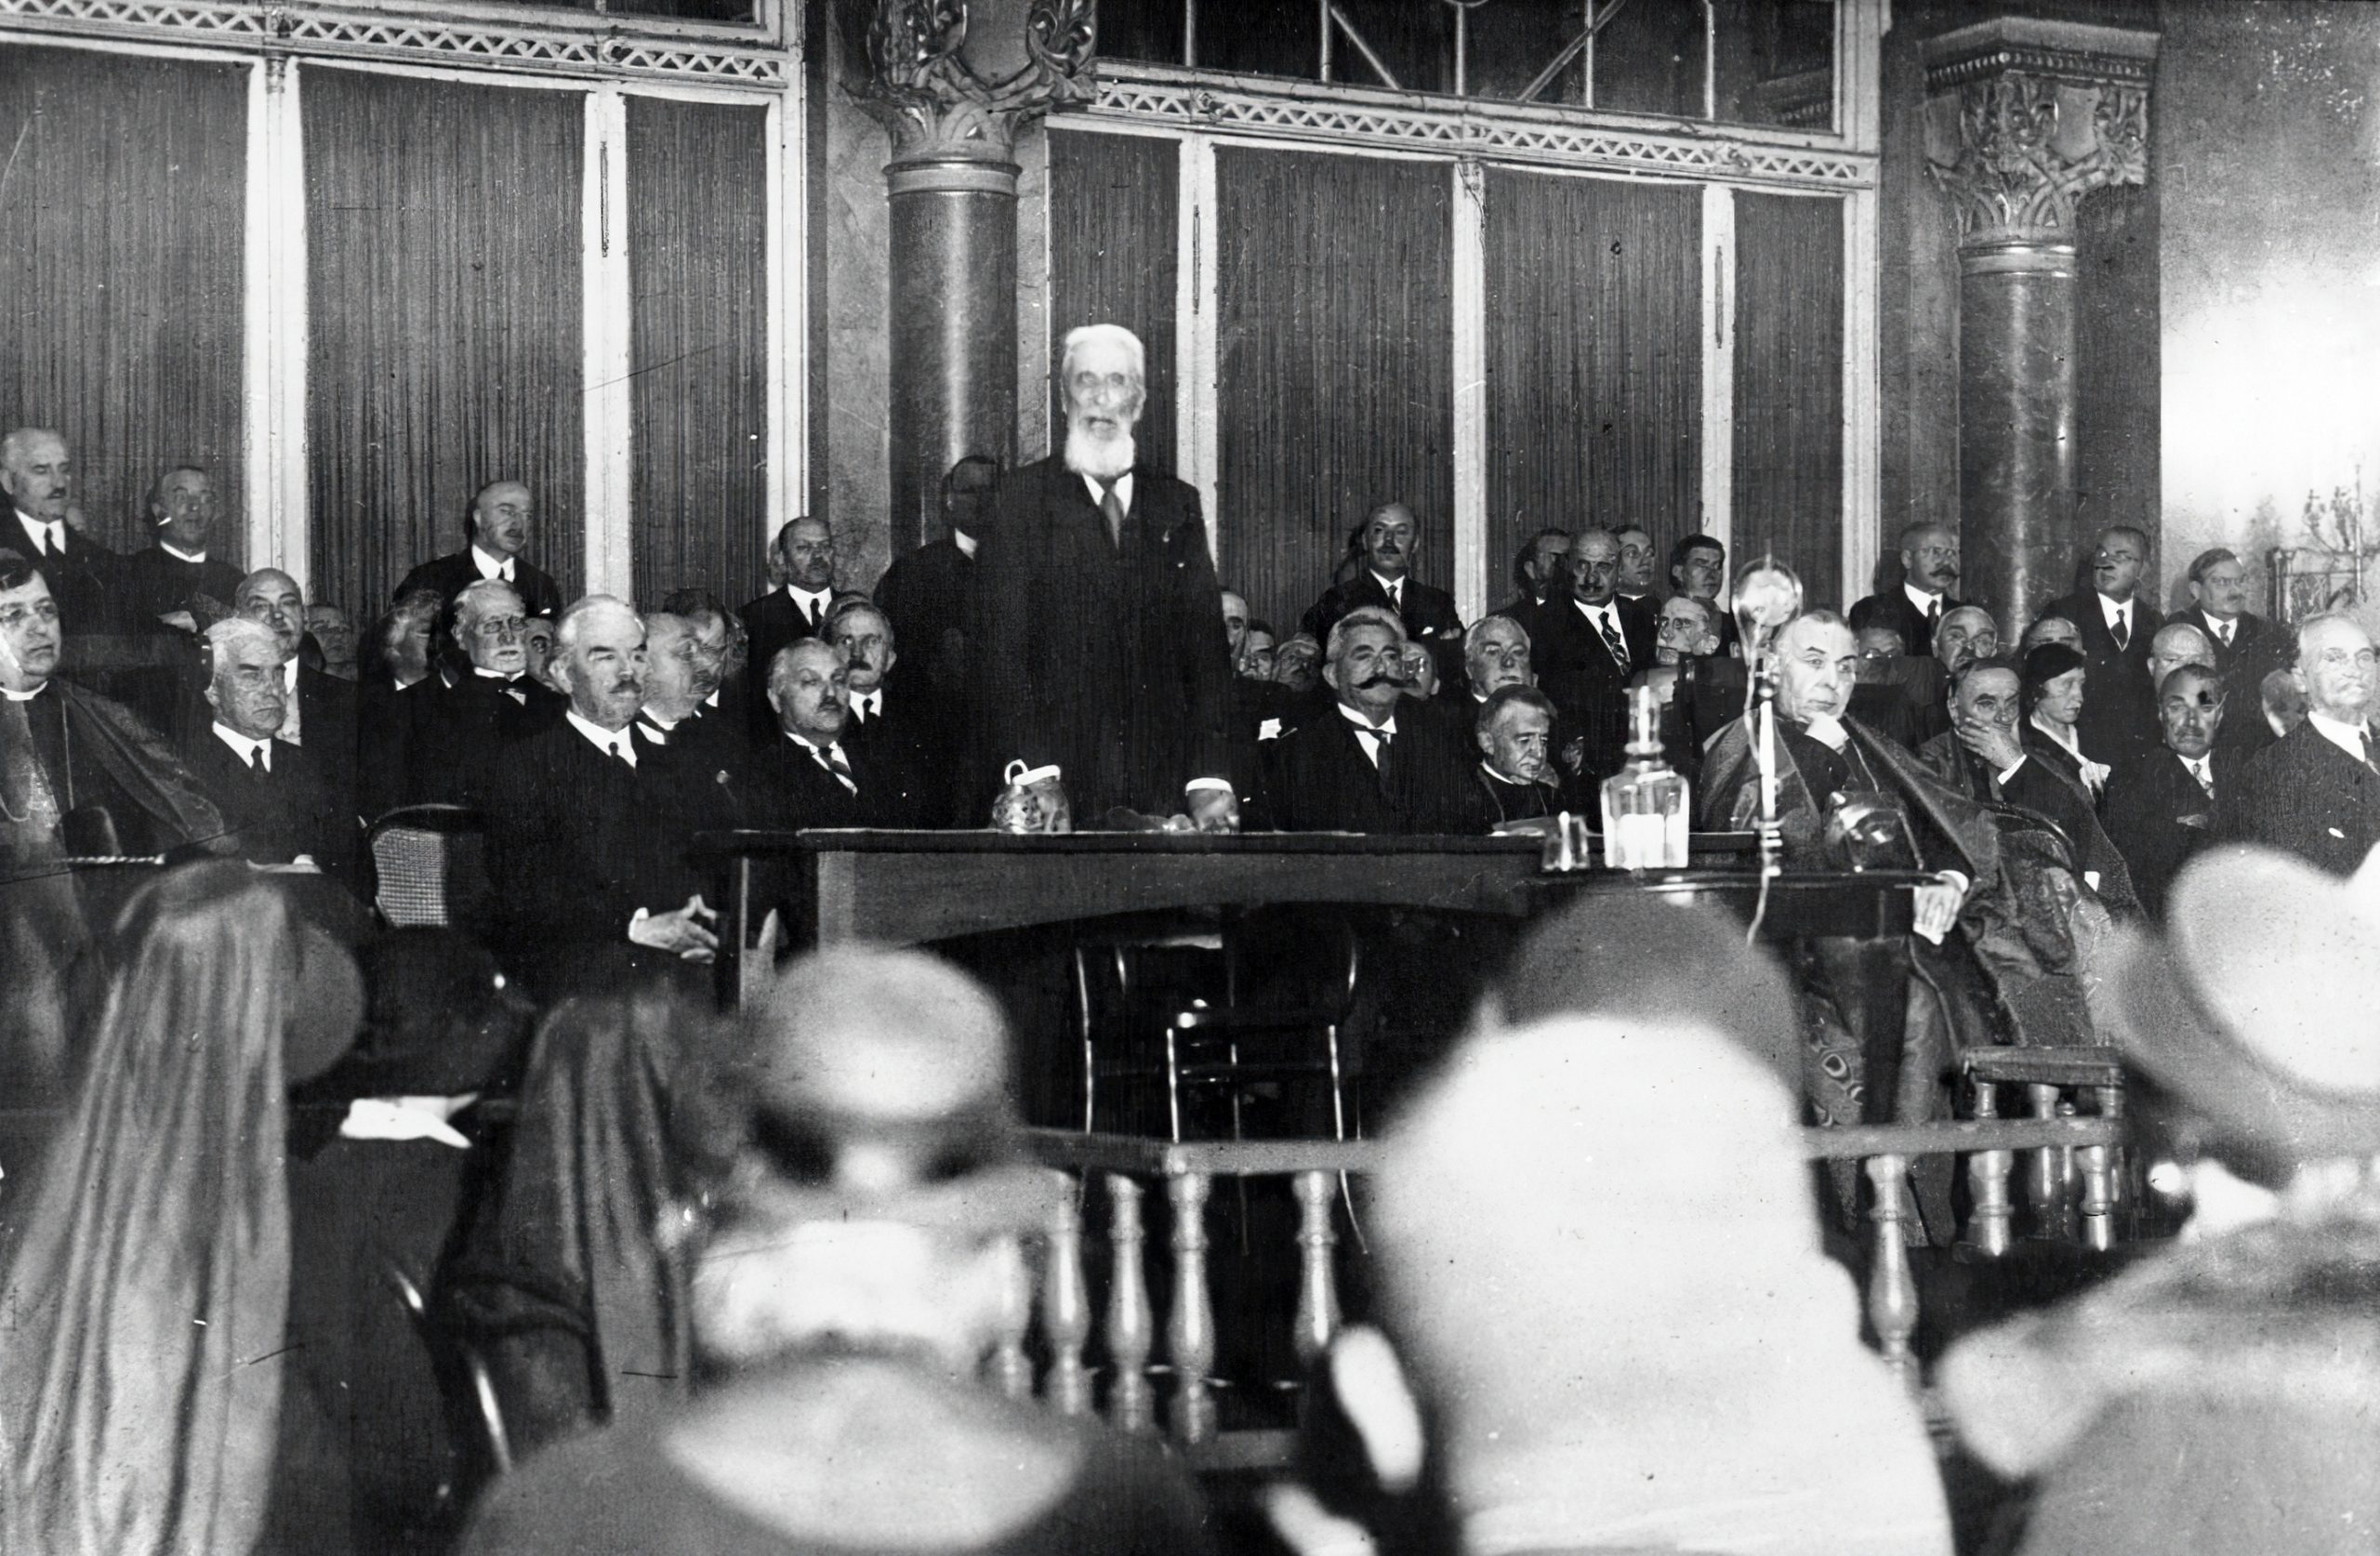 Graf Apponyi, Leiter der Friedensdelegation spricht auf Englisch - VIDEO aus dem Jahr 1929 entdeckt